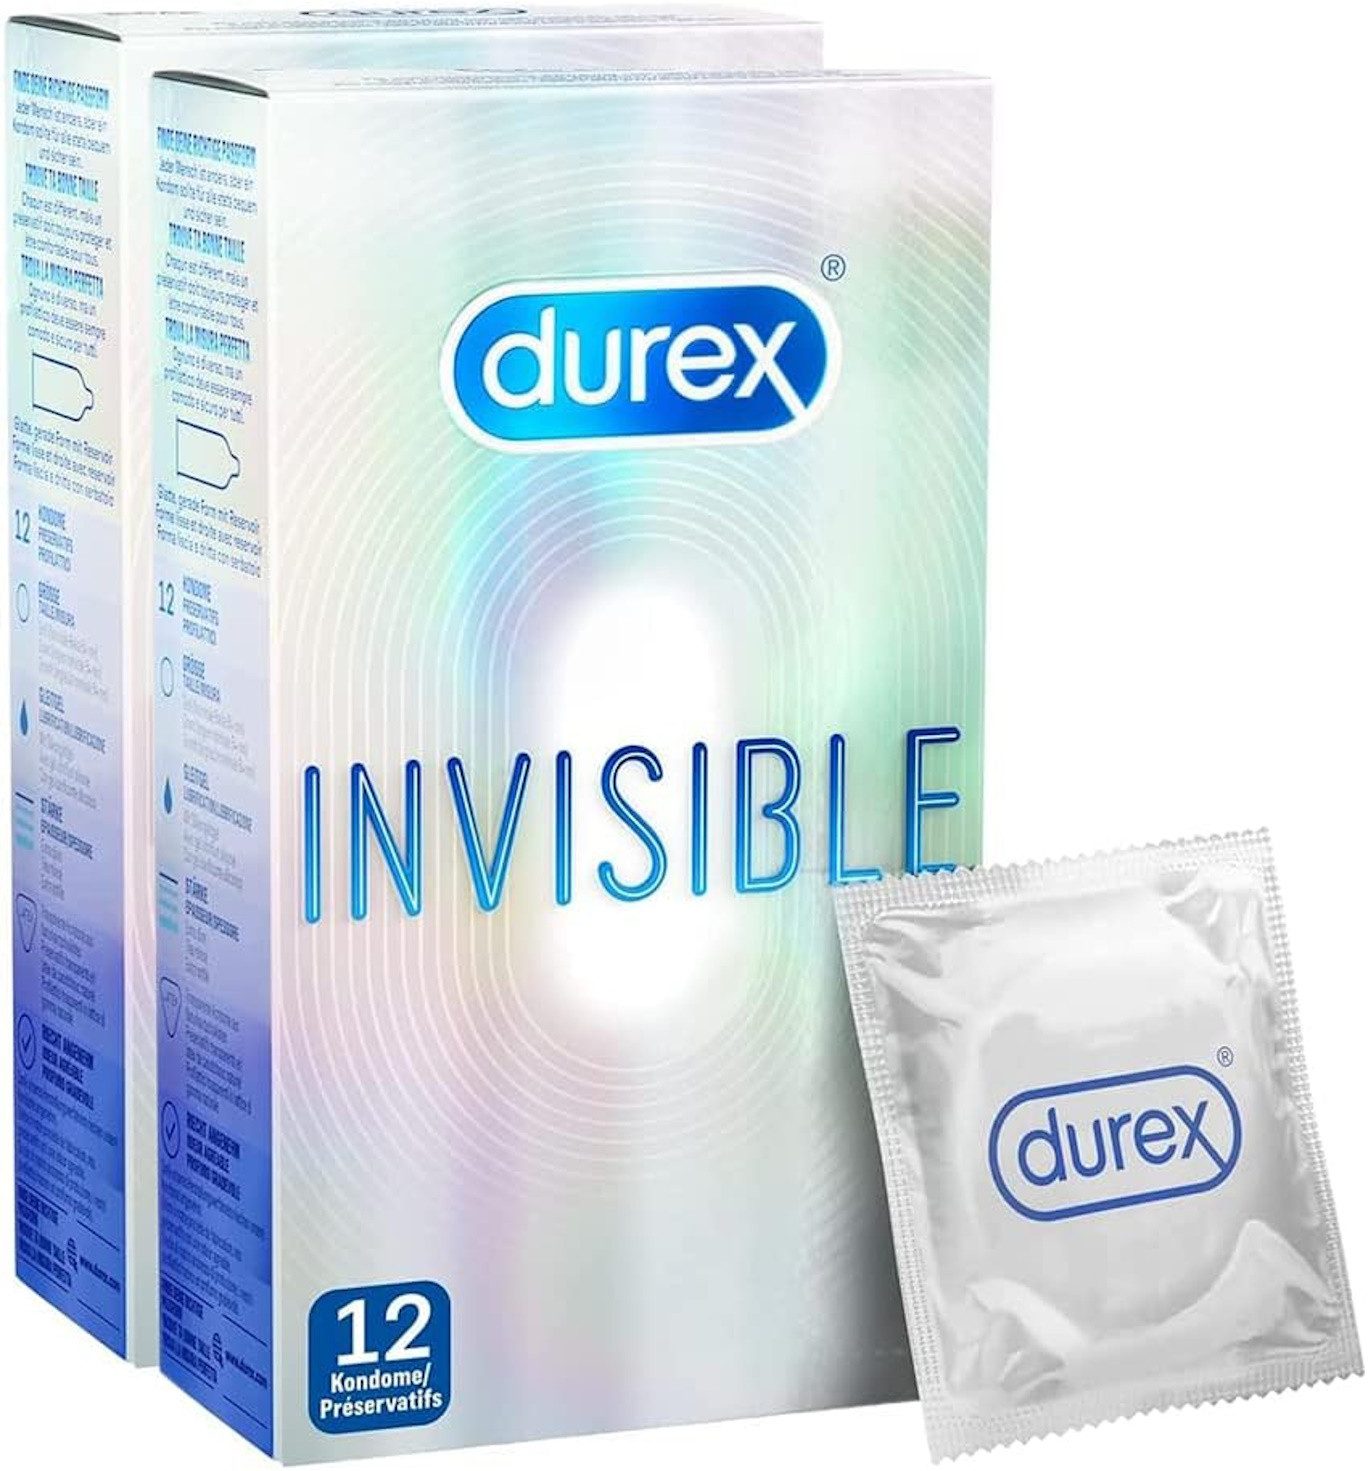 durex Kondome Invisible, 24 St., extra dünn, für ein besonders gefühlsintensives Sexerlebnis